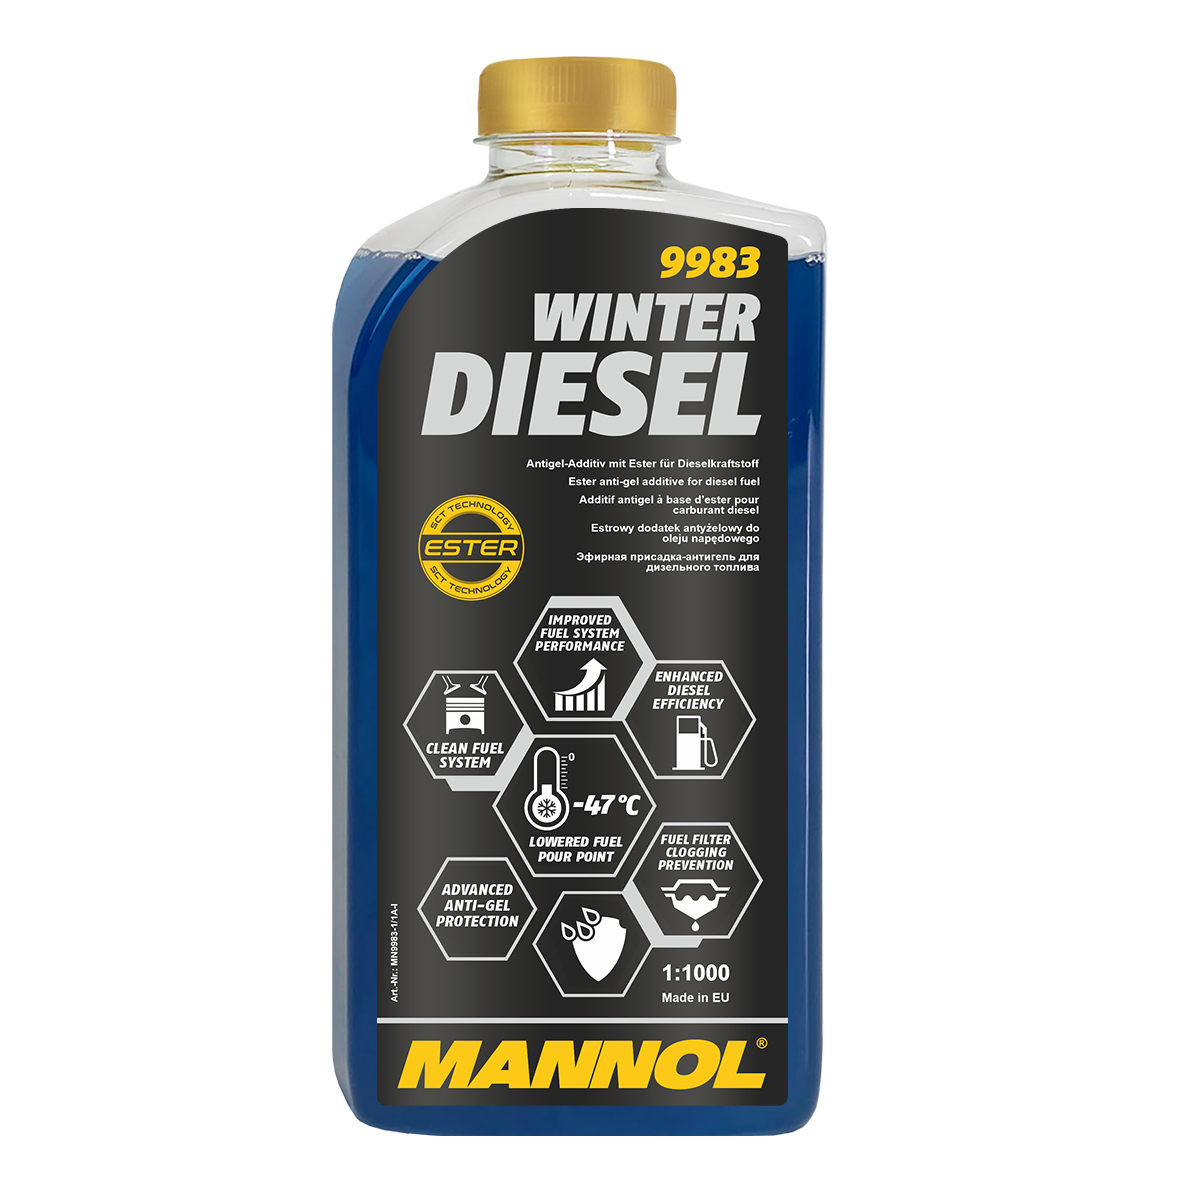 MANNOL Winter Diesel 9983 - Additives